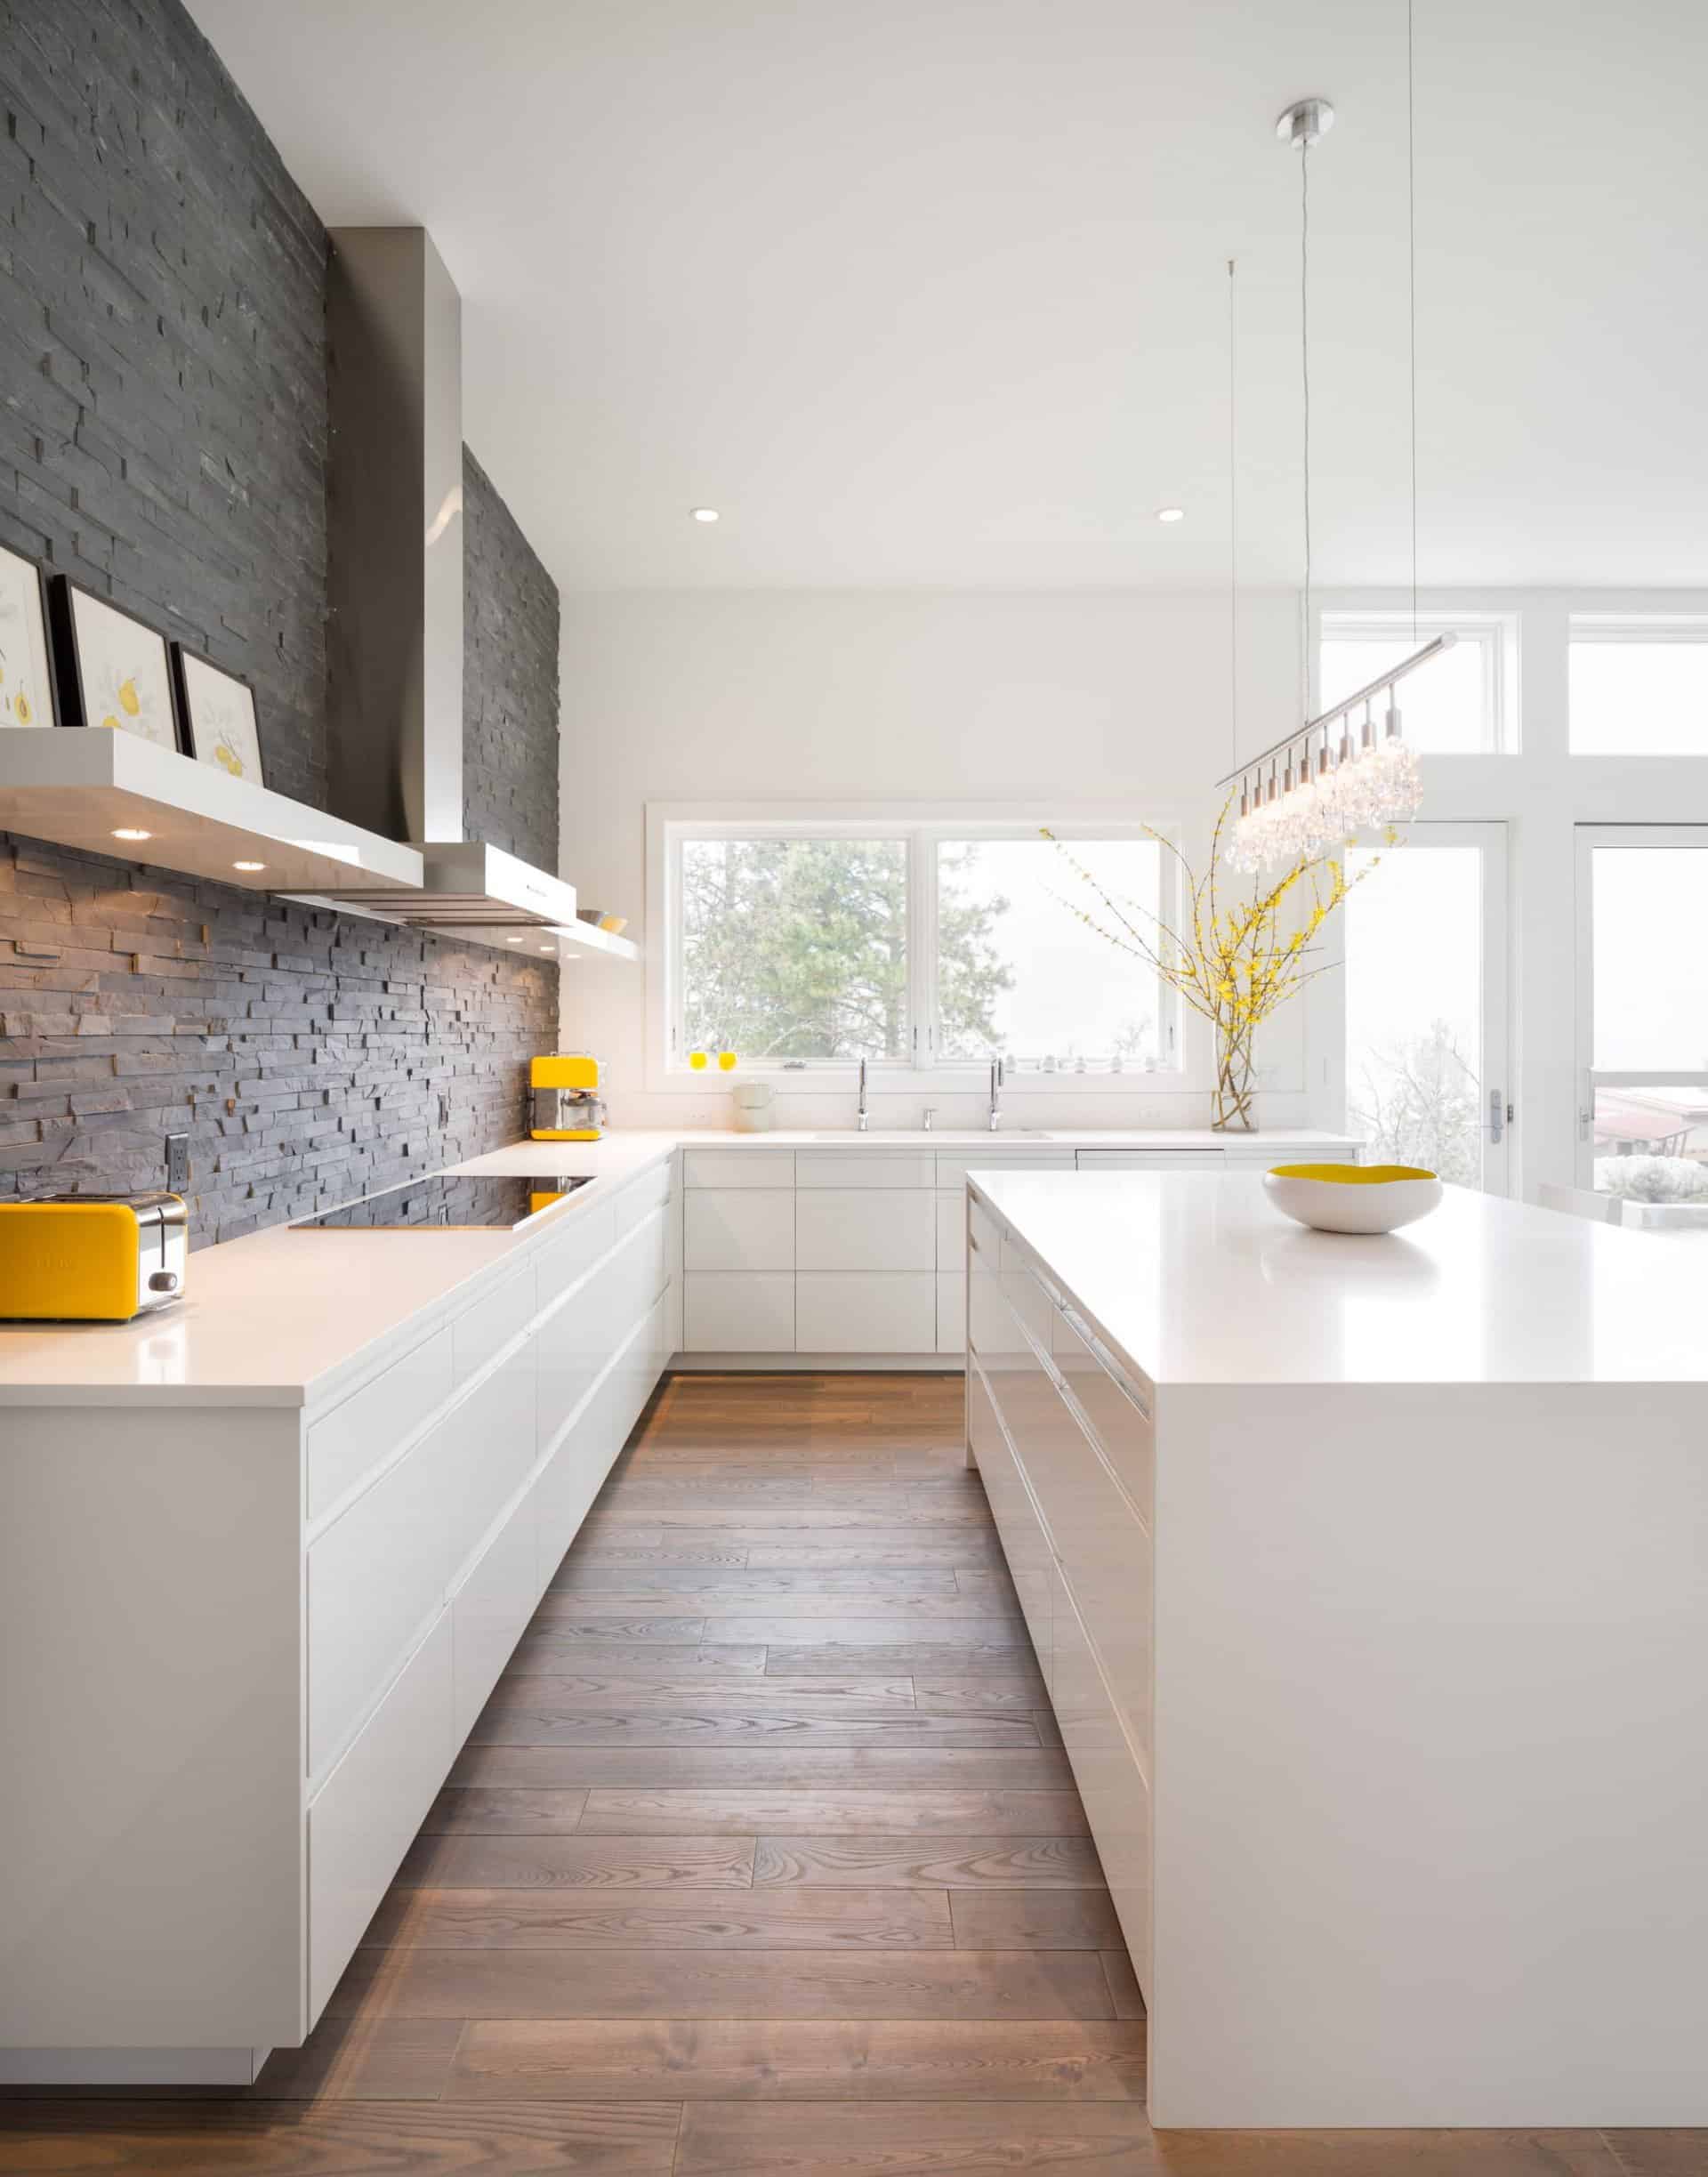  white modern kitchen designs